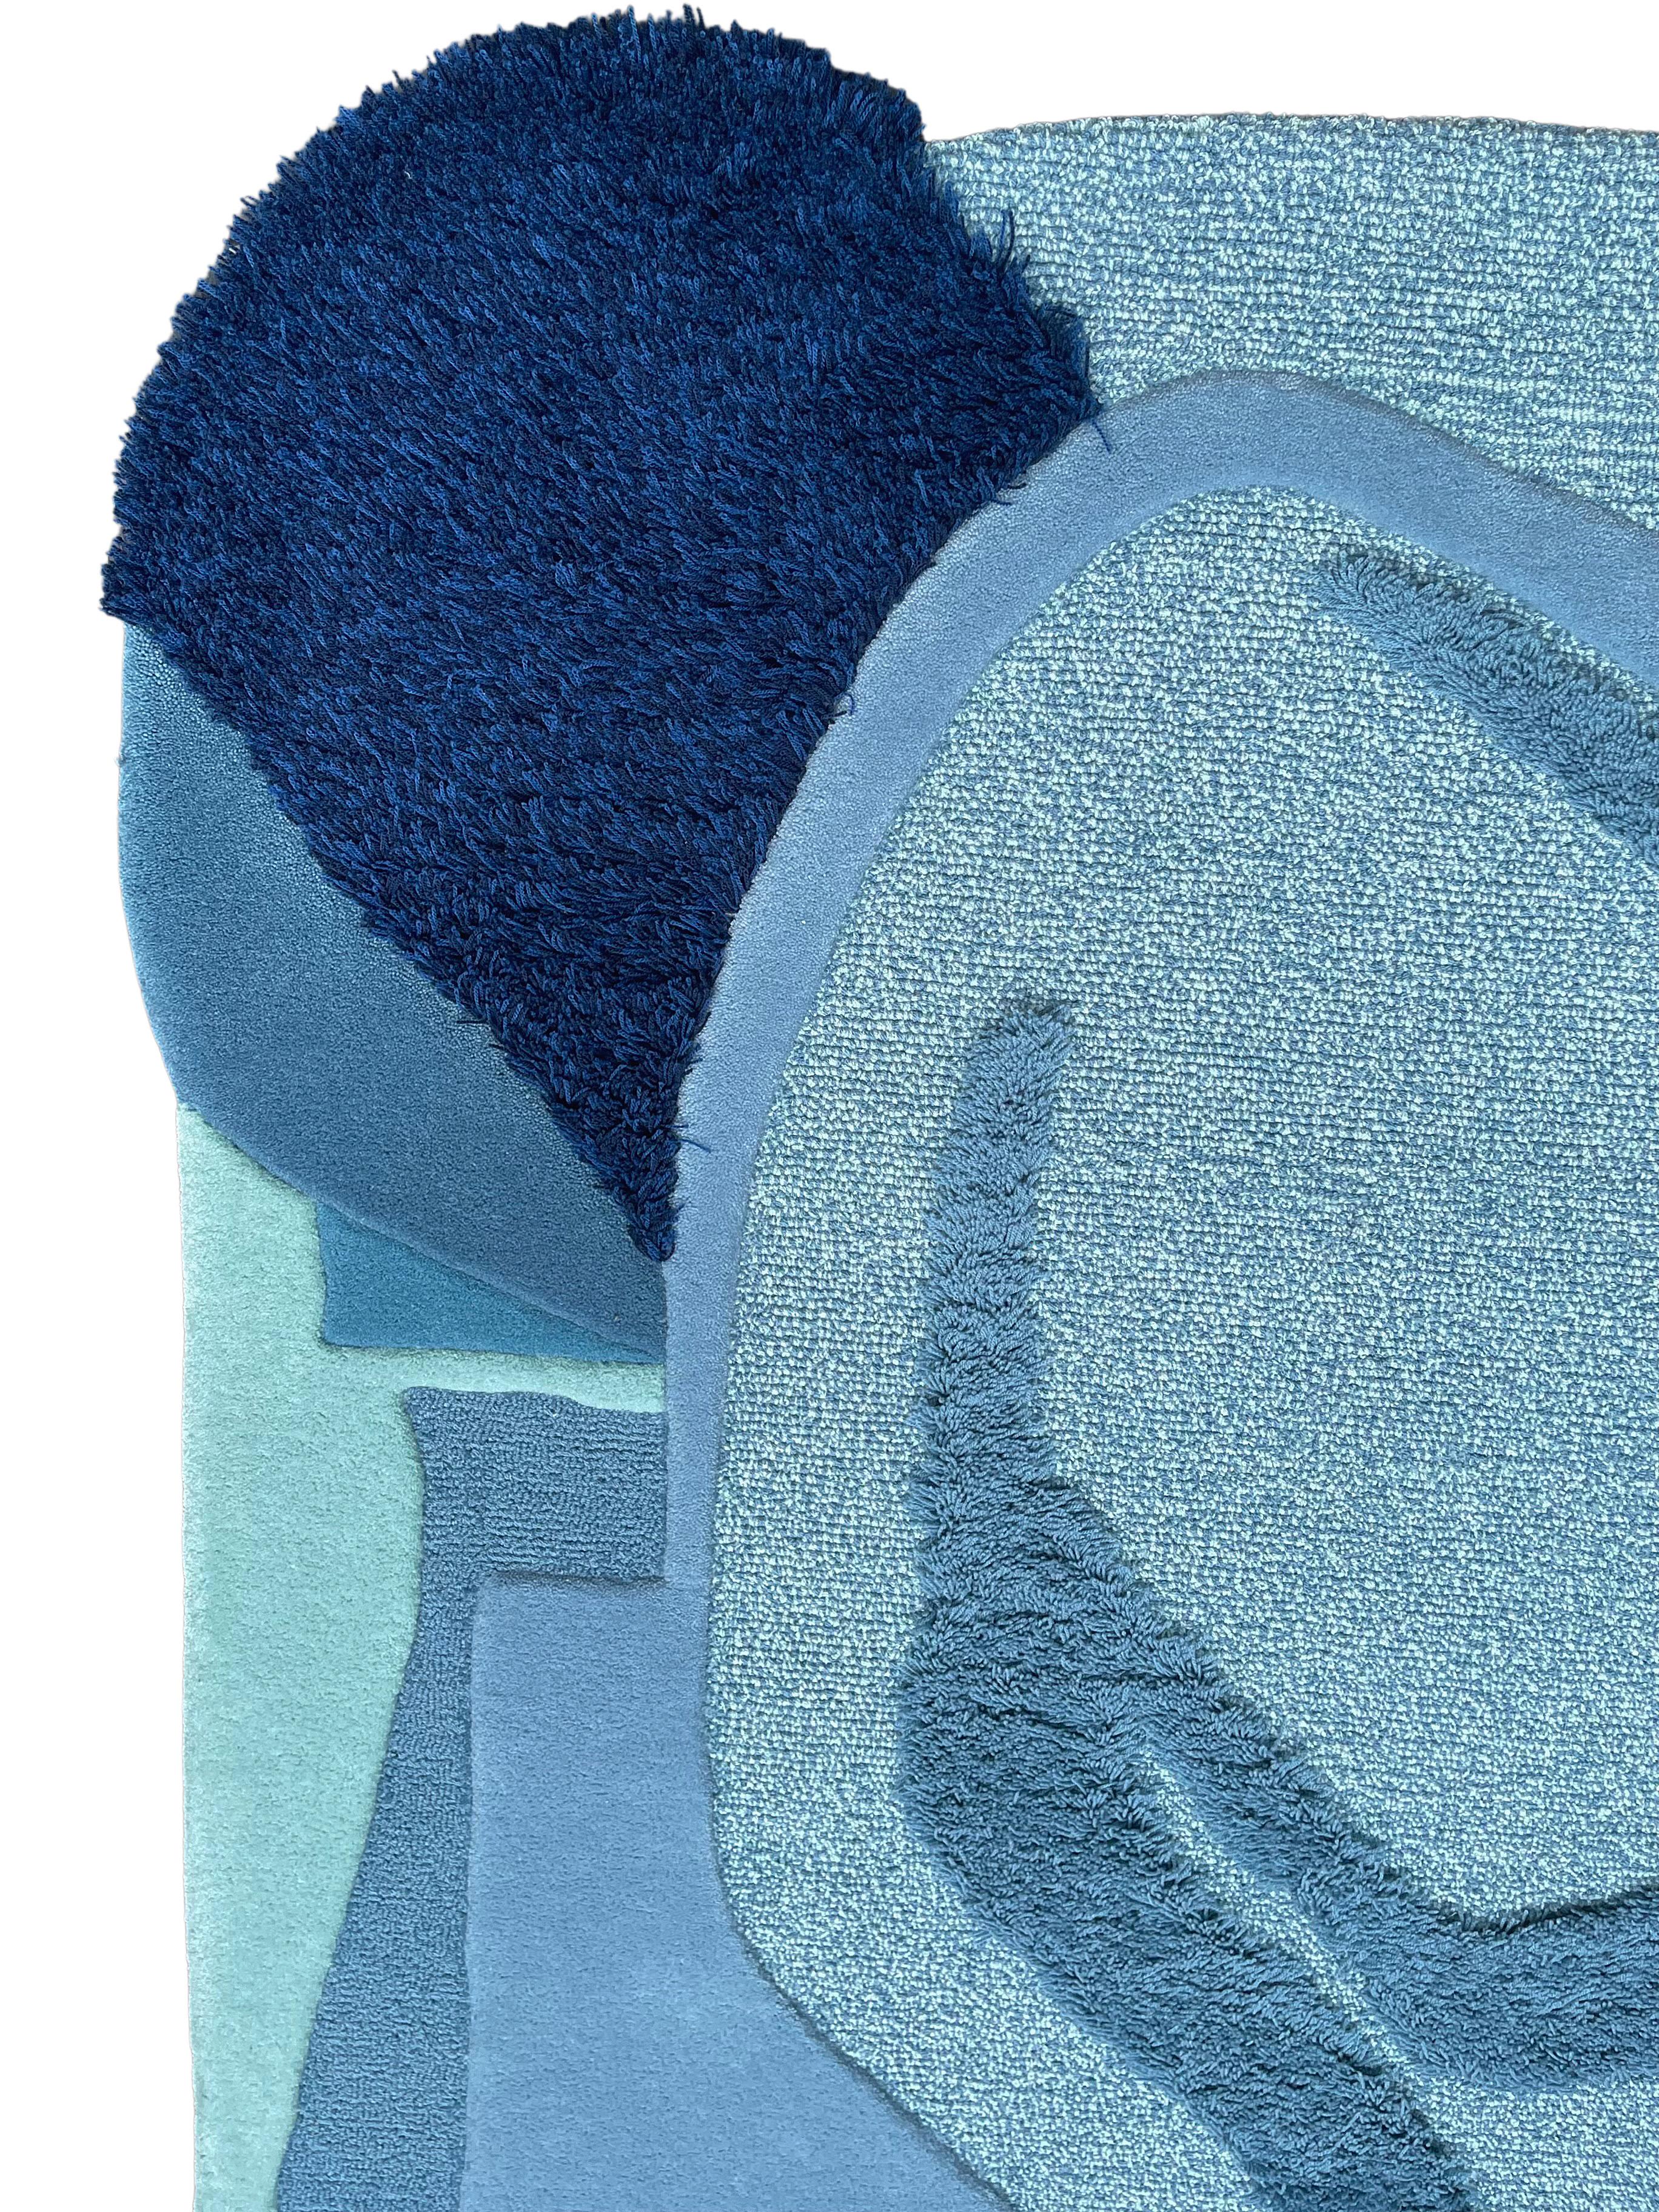 Earth Day Bleu ! est un tapis contemporain en laine touffetée à la main de forme irrégulière avec un mélange de couleurs bleues 

Un tapis inspiré des courants de l'océan et des Cumulonimbus ; sources d'eau - l'essence même de la vie. Reproduisez